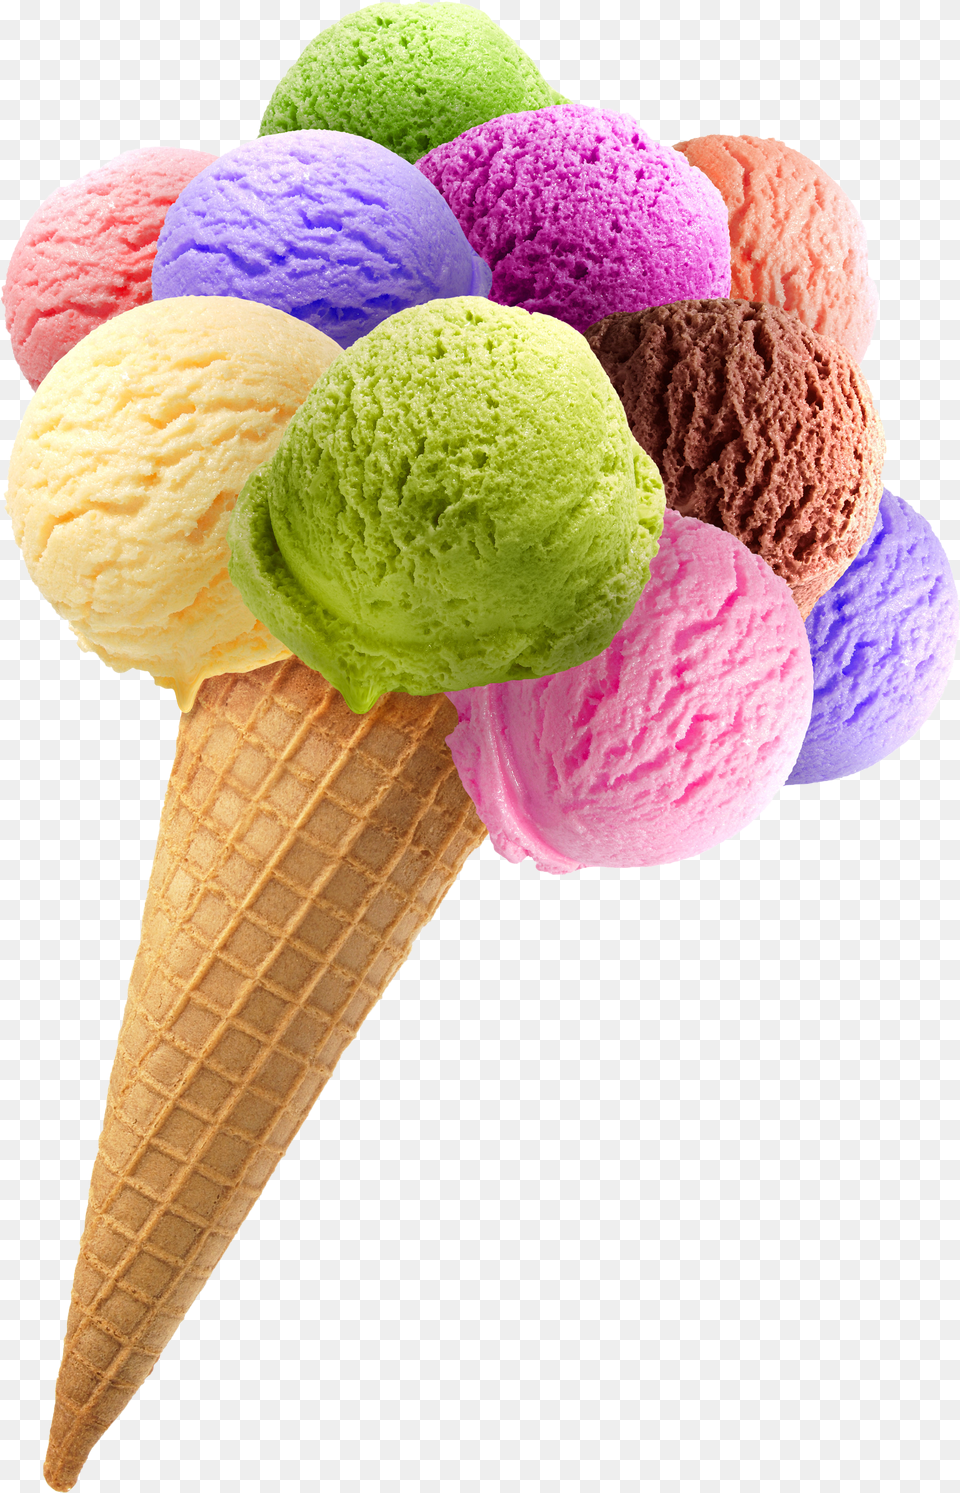 Scoop Cone Ice Cream Png Image